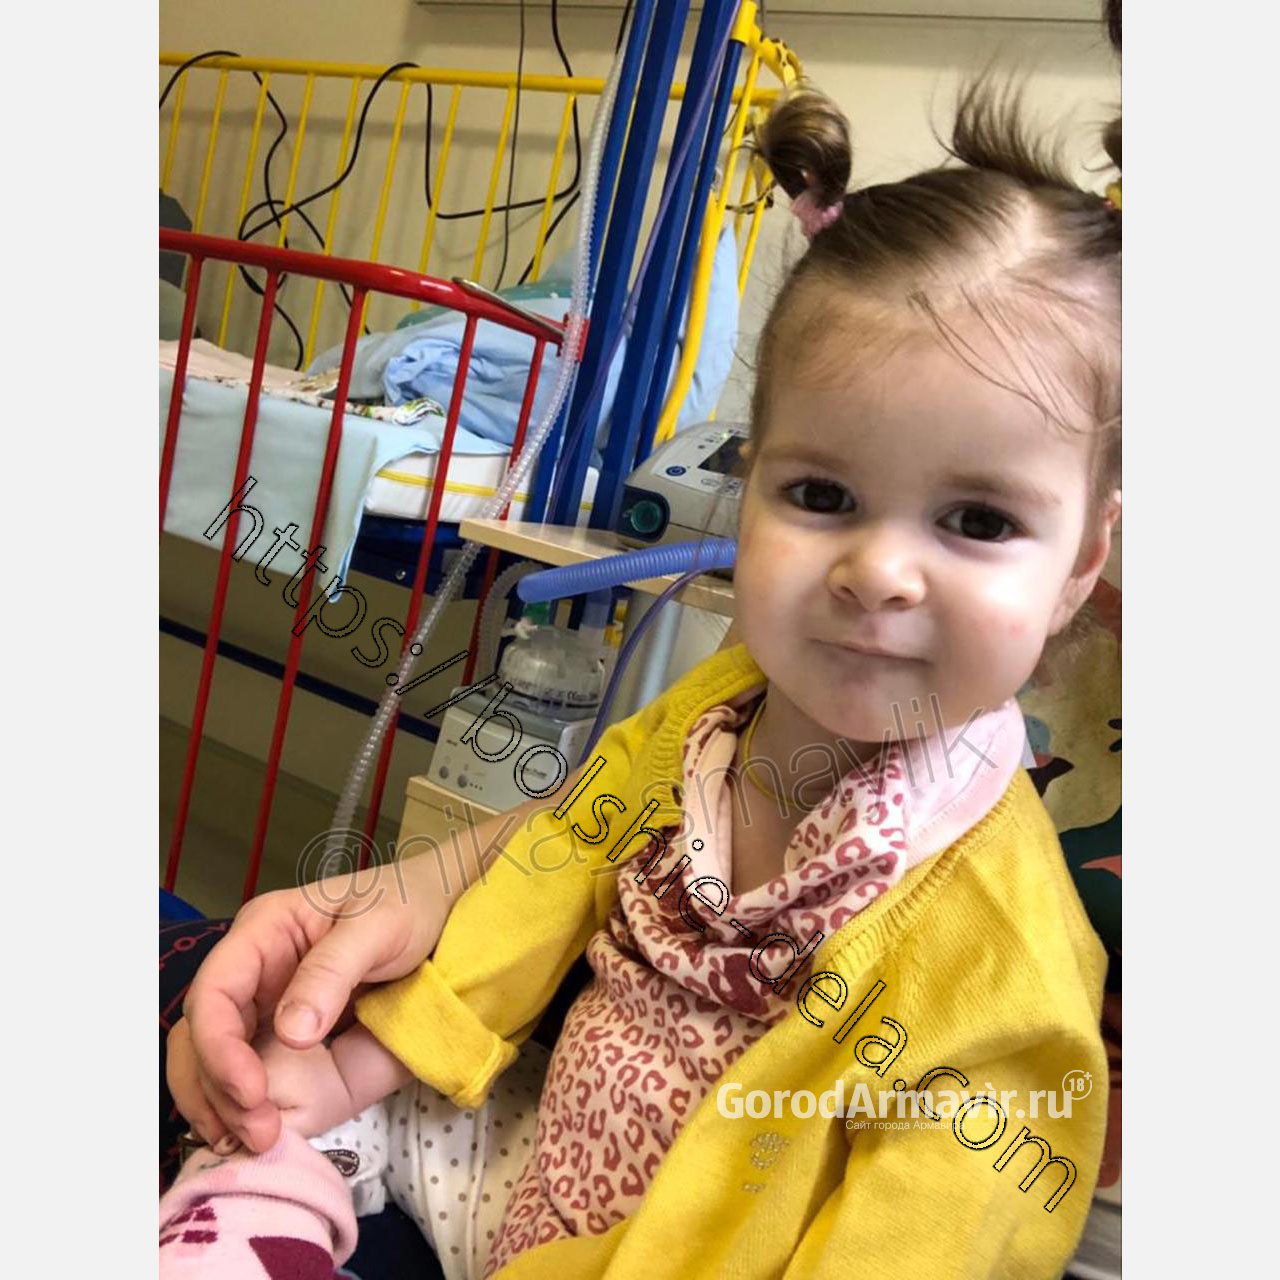 Тяжелобольной 2-летней девочке требуется собрать на лечение 180 миллионов рублей 